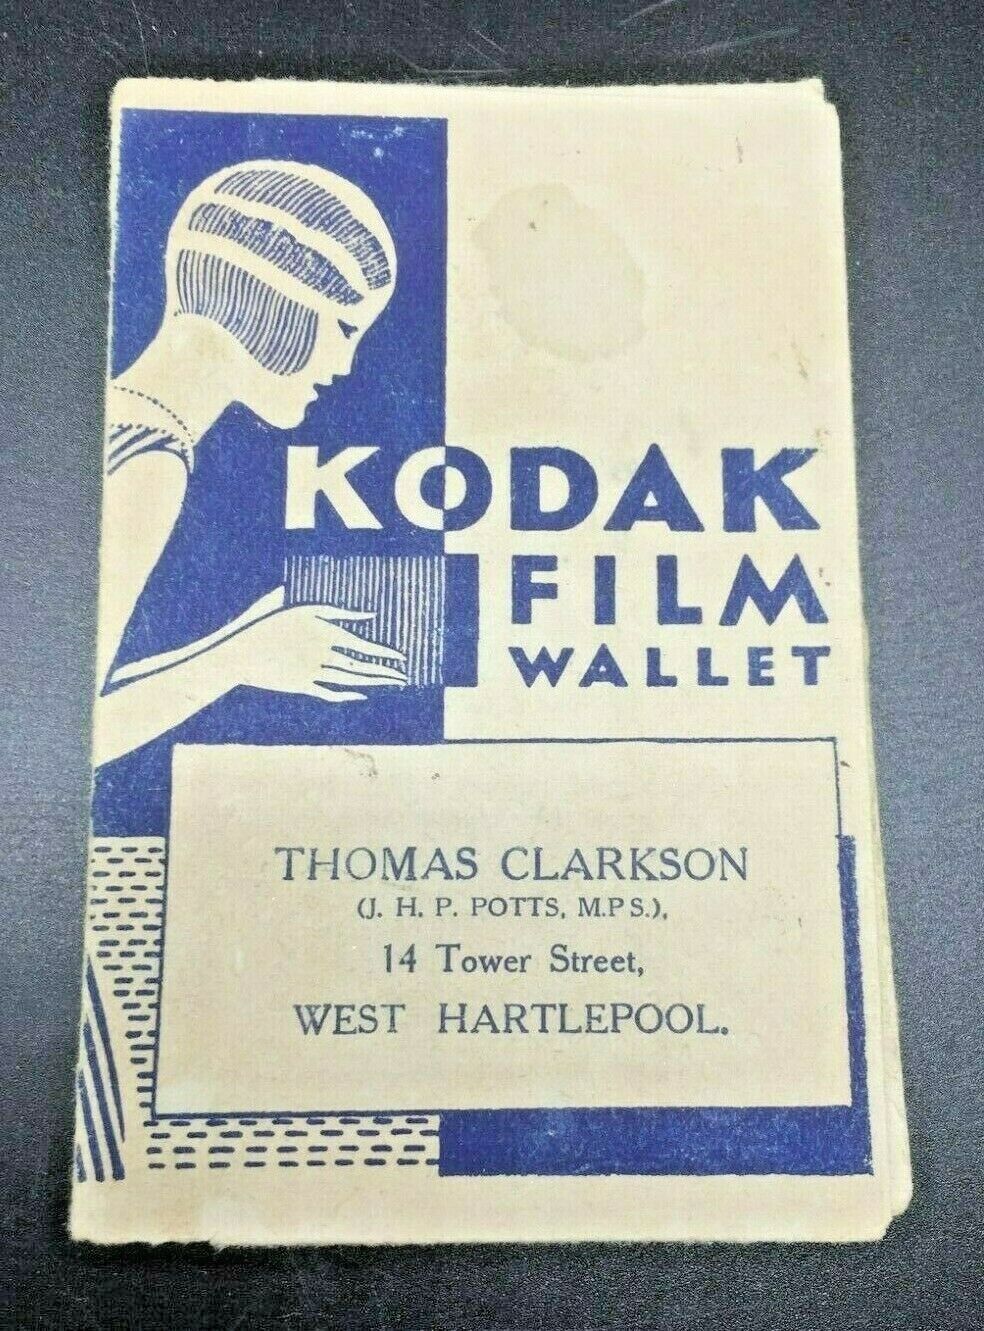 Vintage Kodak Film Wallet - Thomas Clarkson, West Hartlepool, England